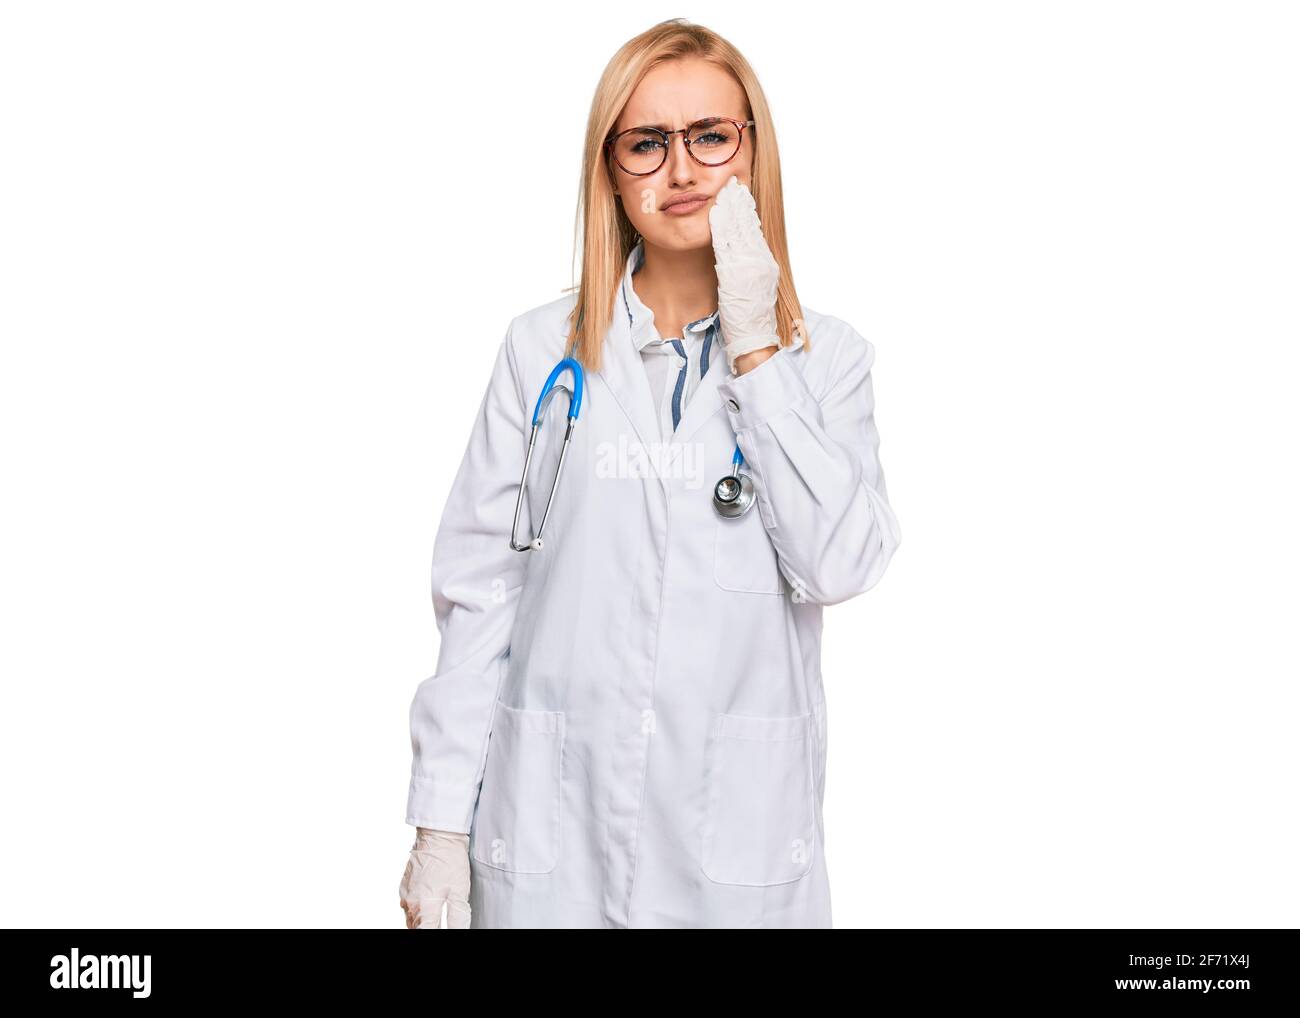 Bella donna caucasica che indossa uniforme medico e stetoscopio che tocca la bocca con la mano con espressione dolorosa a causa di mal di denti o dentali illne Foto Stock